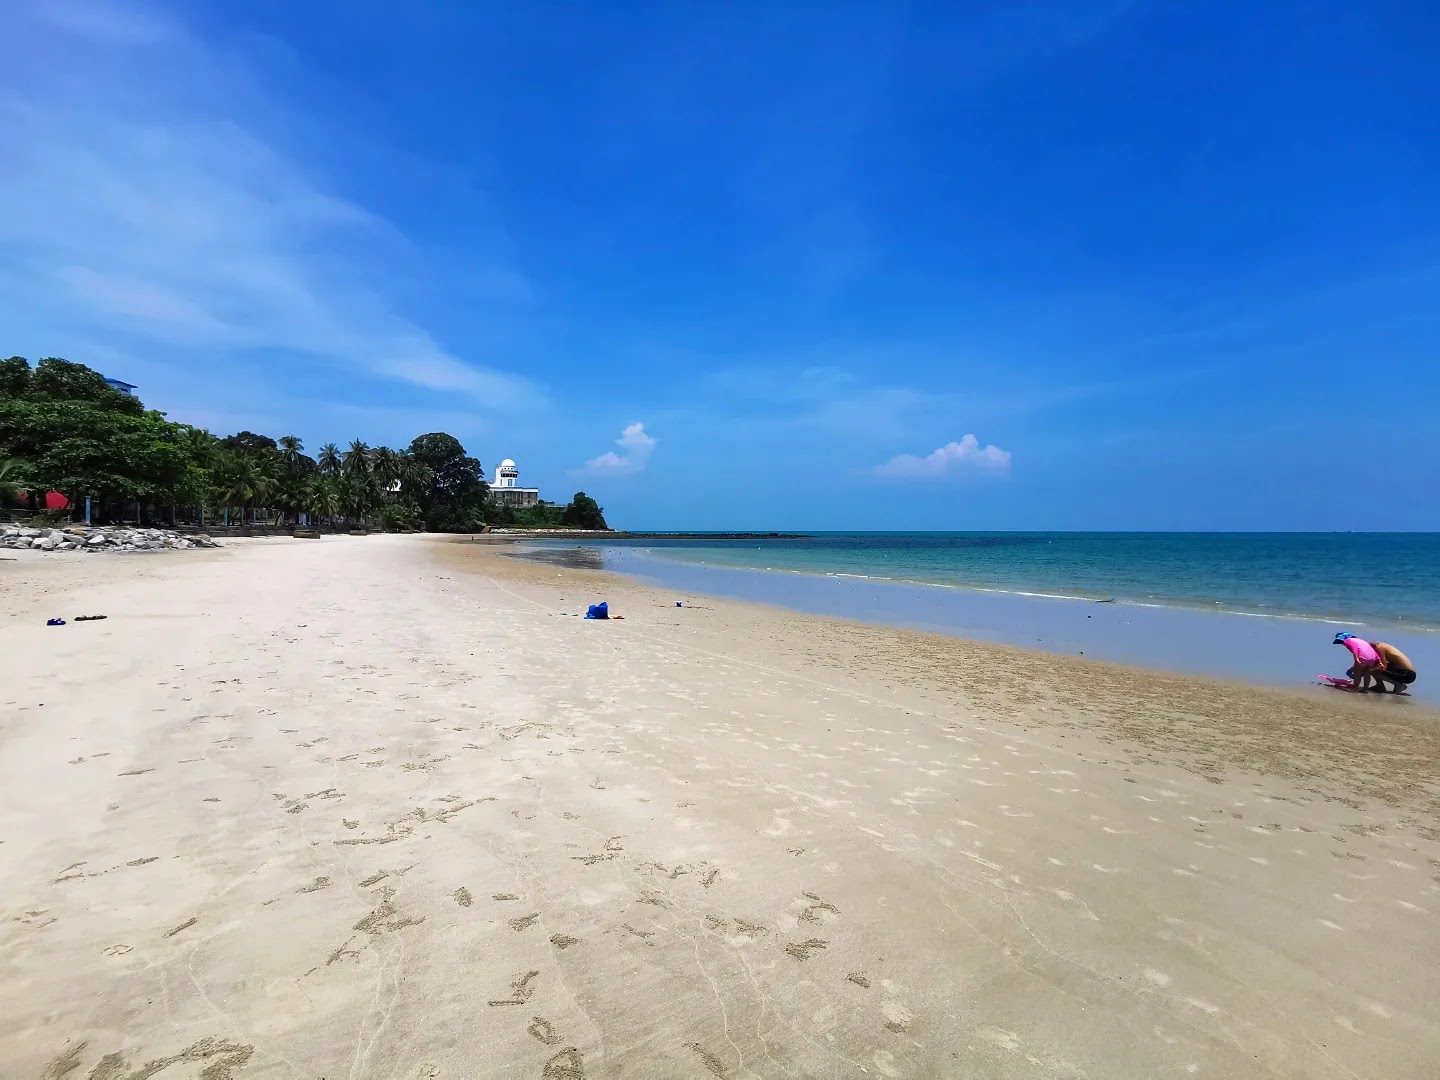 Fotografie cu Port Dickson Beach cu o suprafață de nisip fin strălucitor